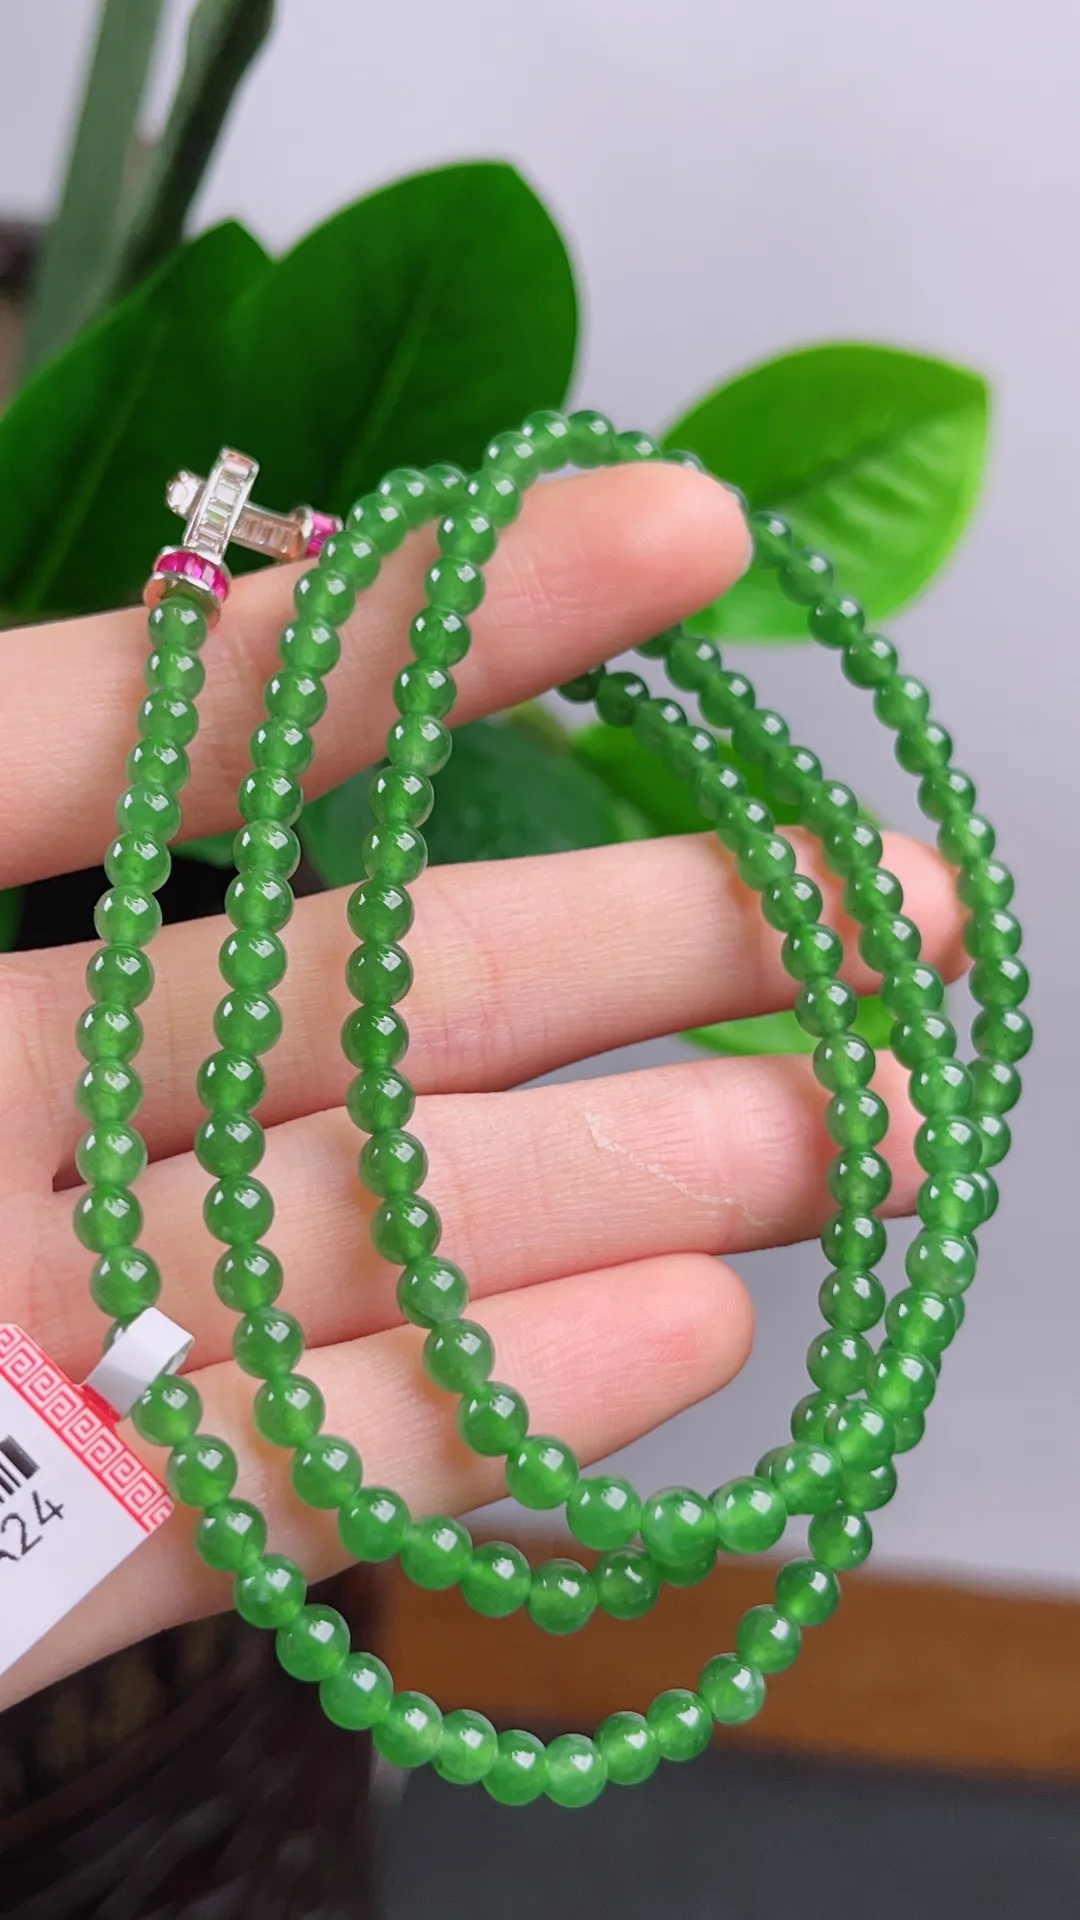 满绿圆珠项链珠链
尺寸：4.3mm重量：22.68g  
佩戴效果优雅 
缅甸天然A货翡翠